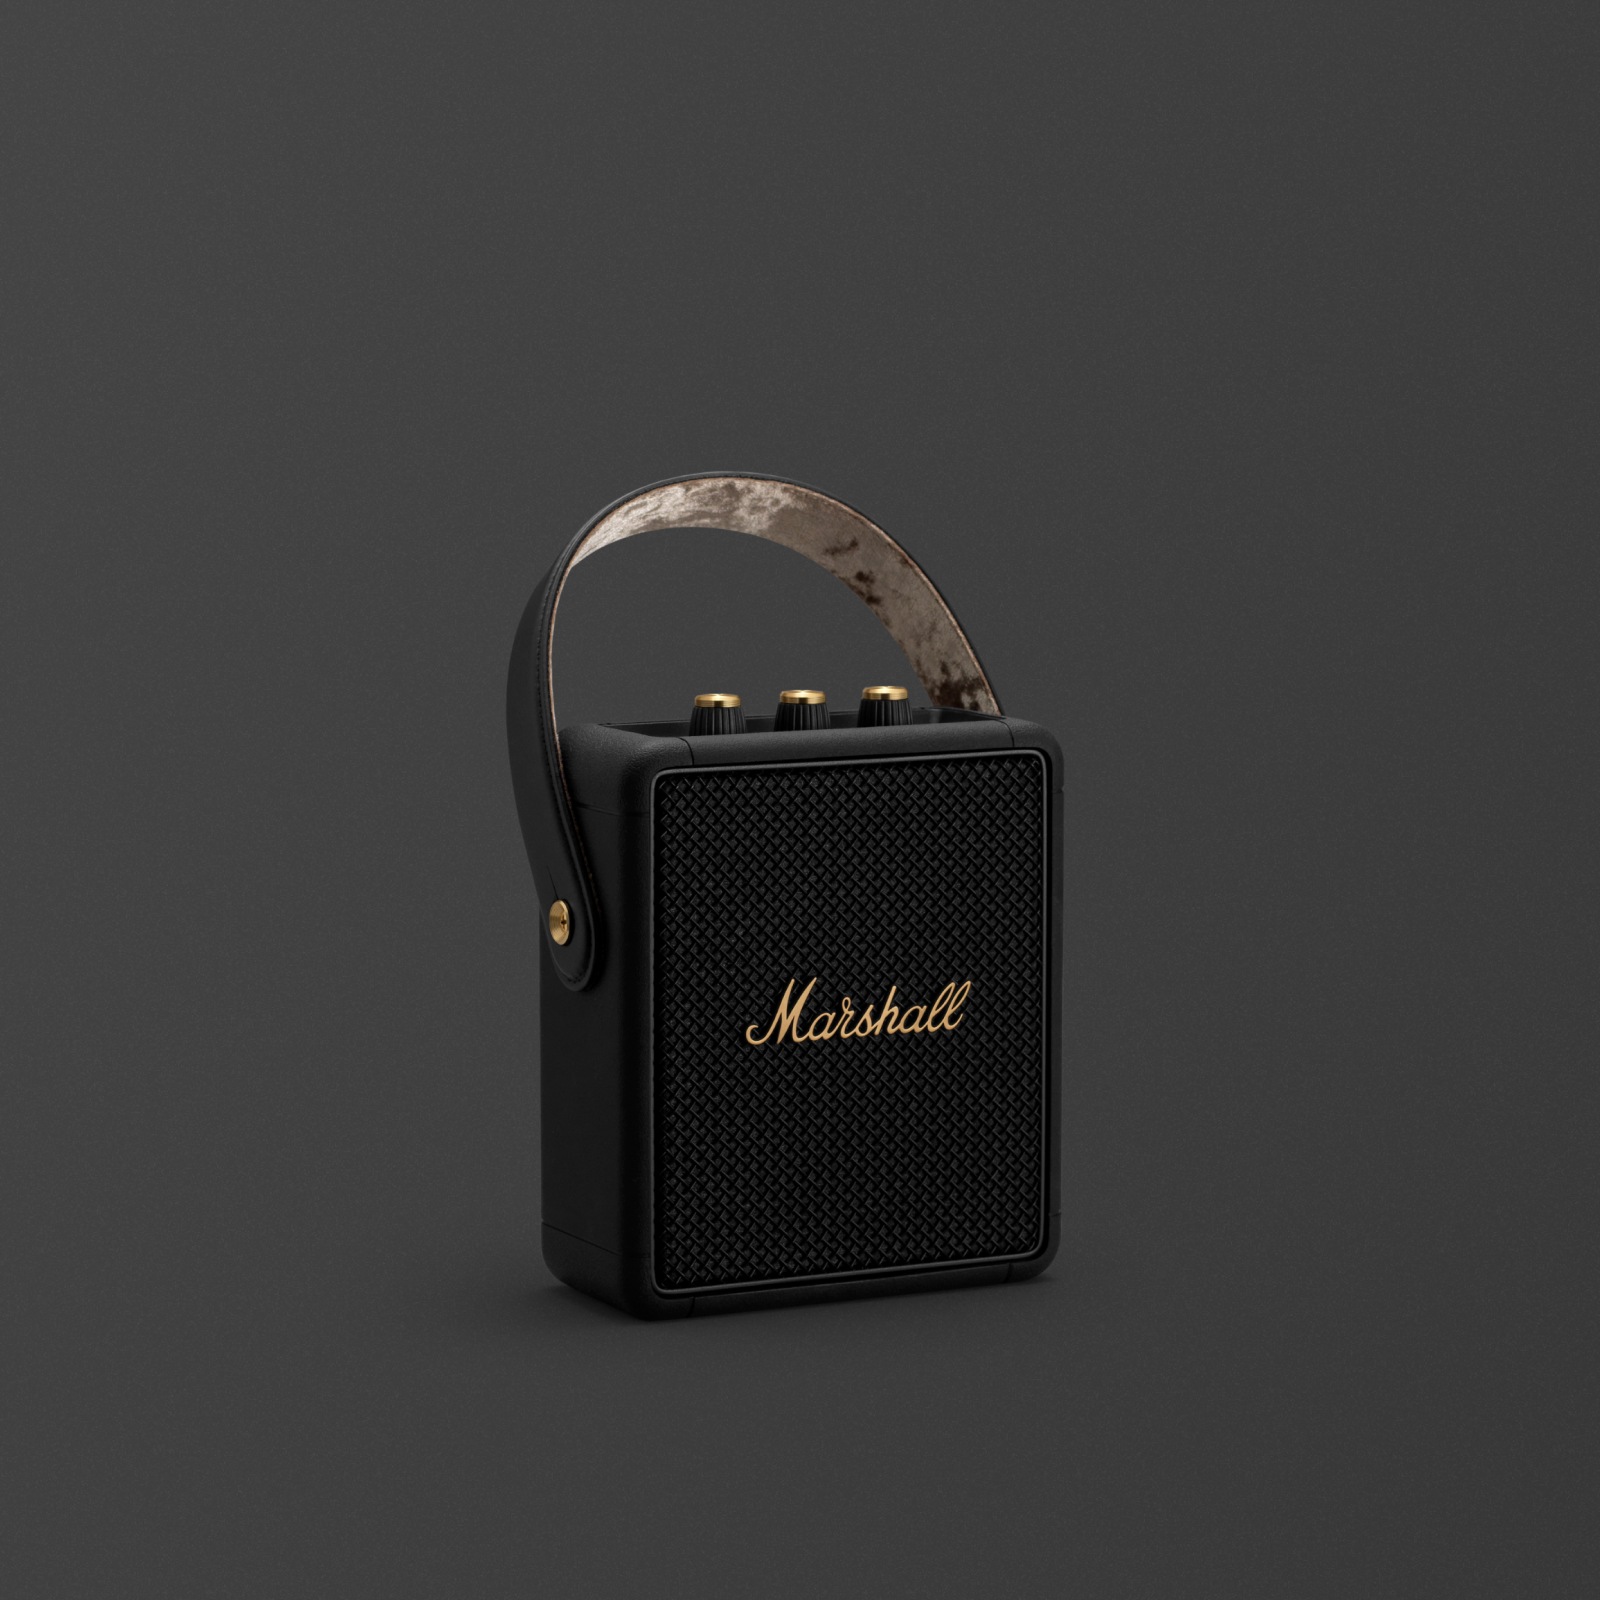 작고 가벼운 Marshall STOCKWELL II BLACK AND BRASS는 이동이 많은 음악 애호가를 위한 휴대용 블루투스 스피커입니다.